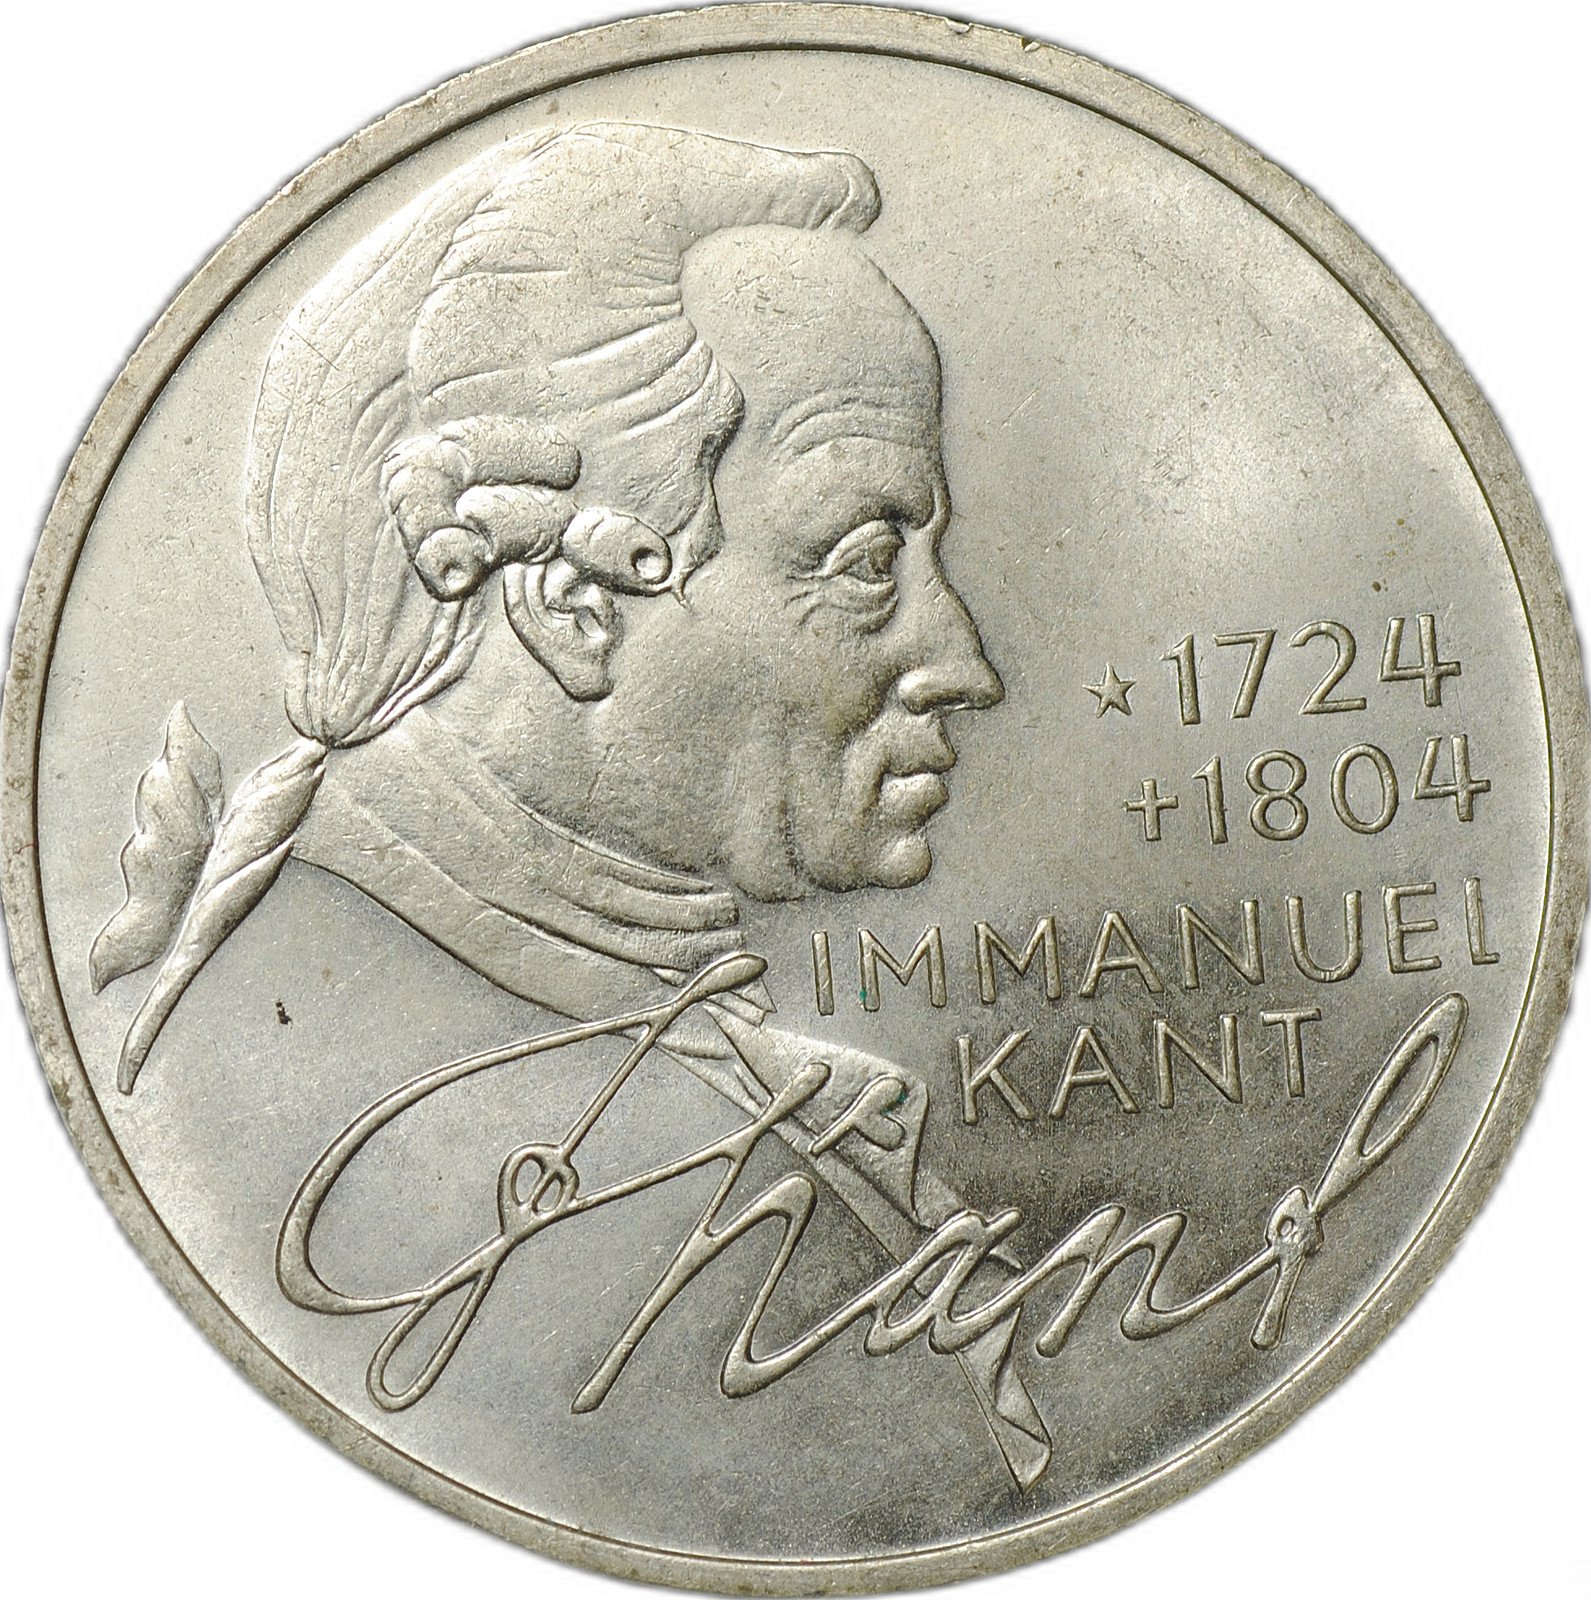 Монета кант 1724-1804